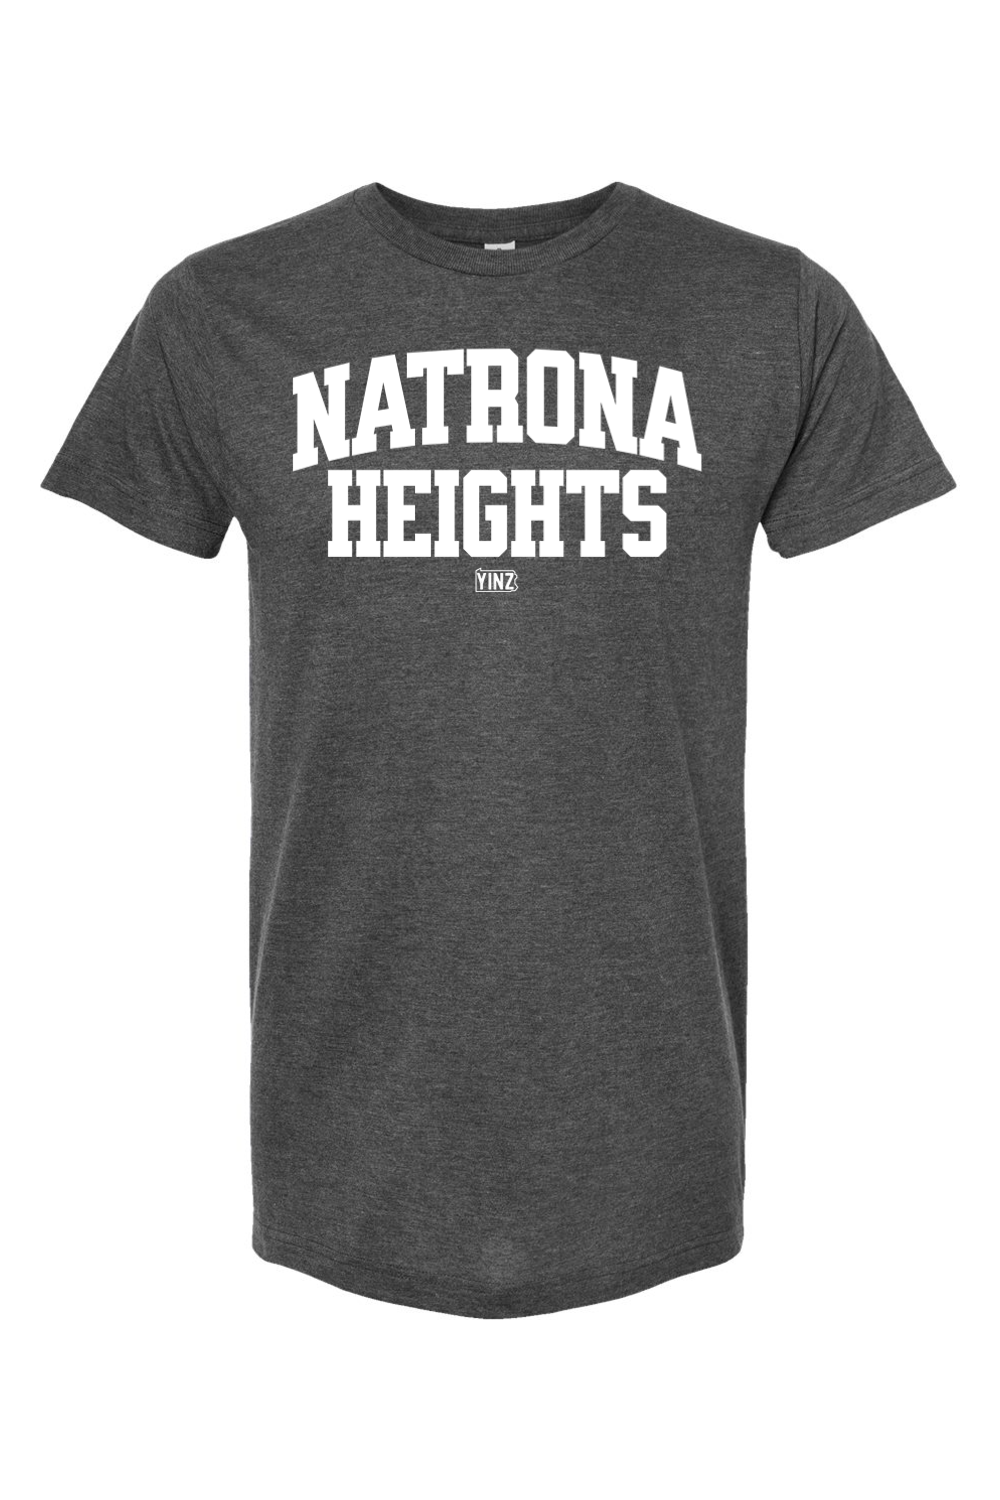 Natrona Heights - Yinzylvania